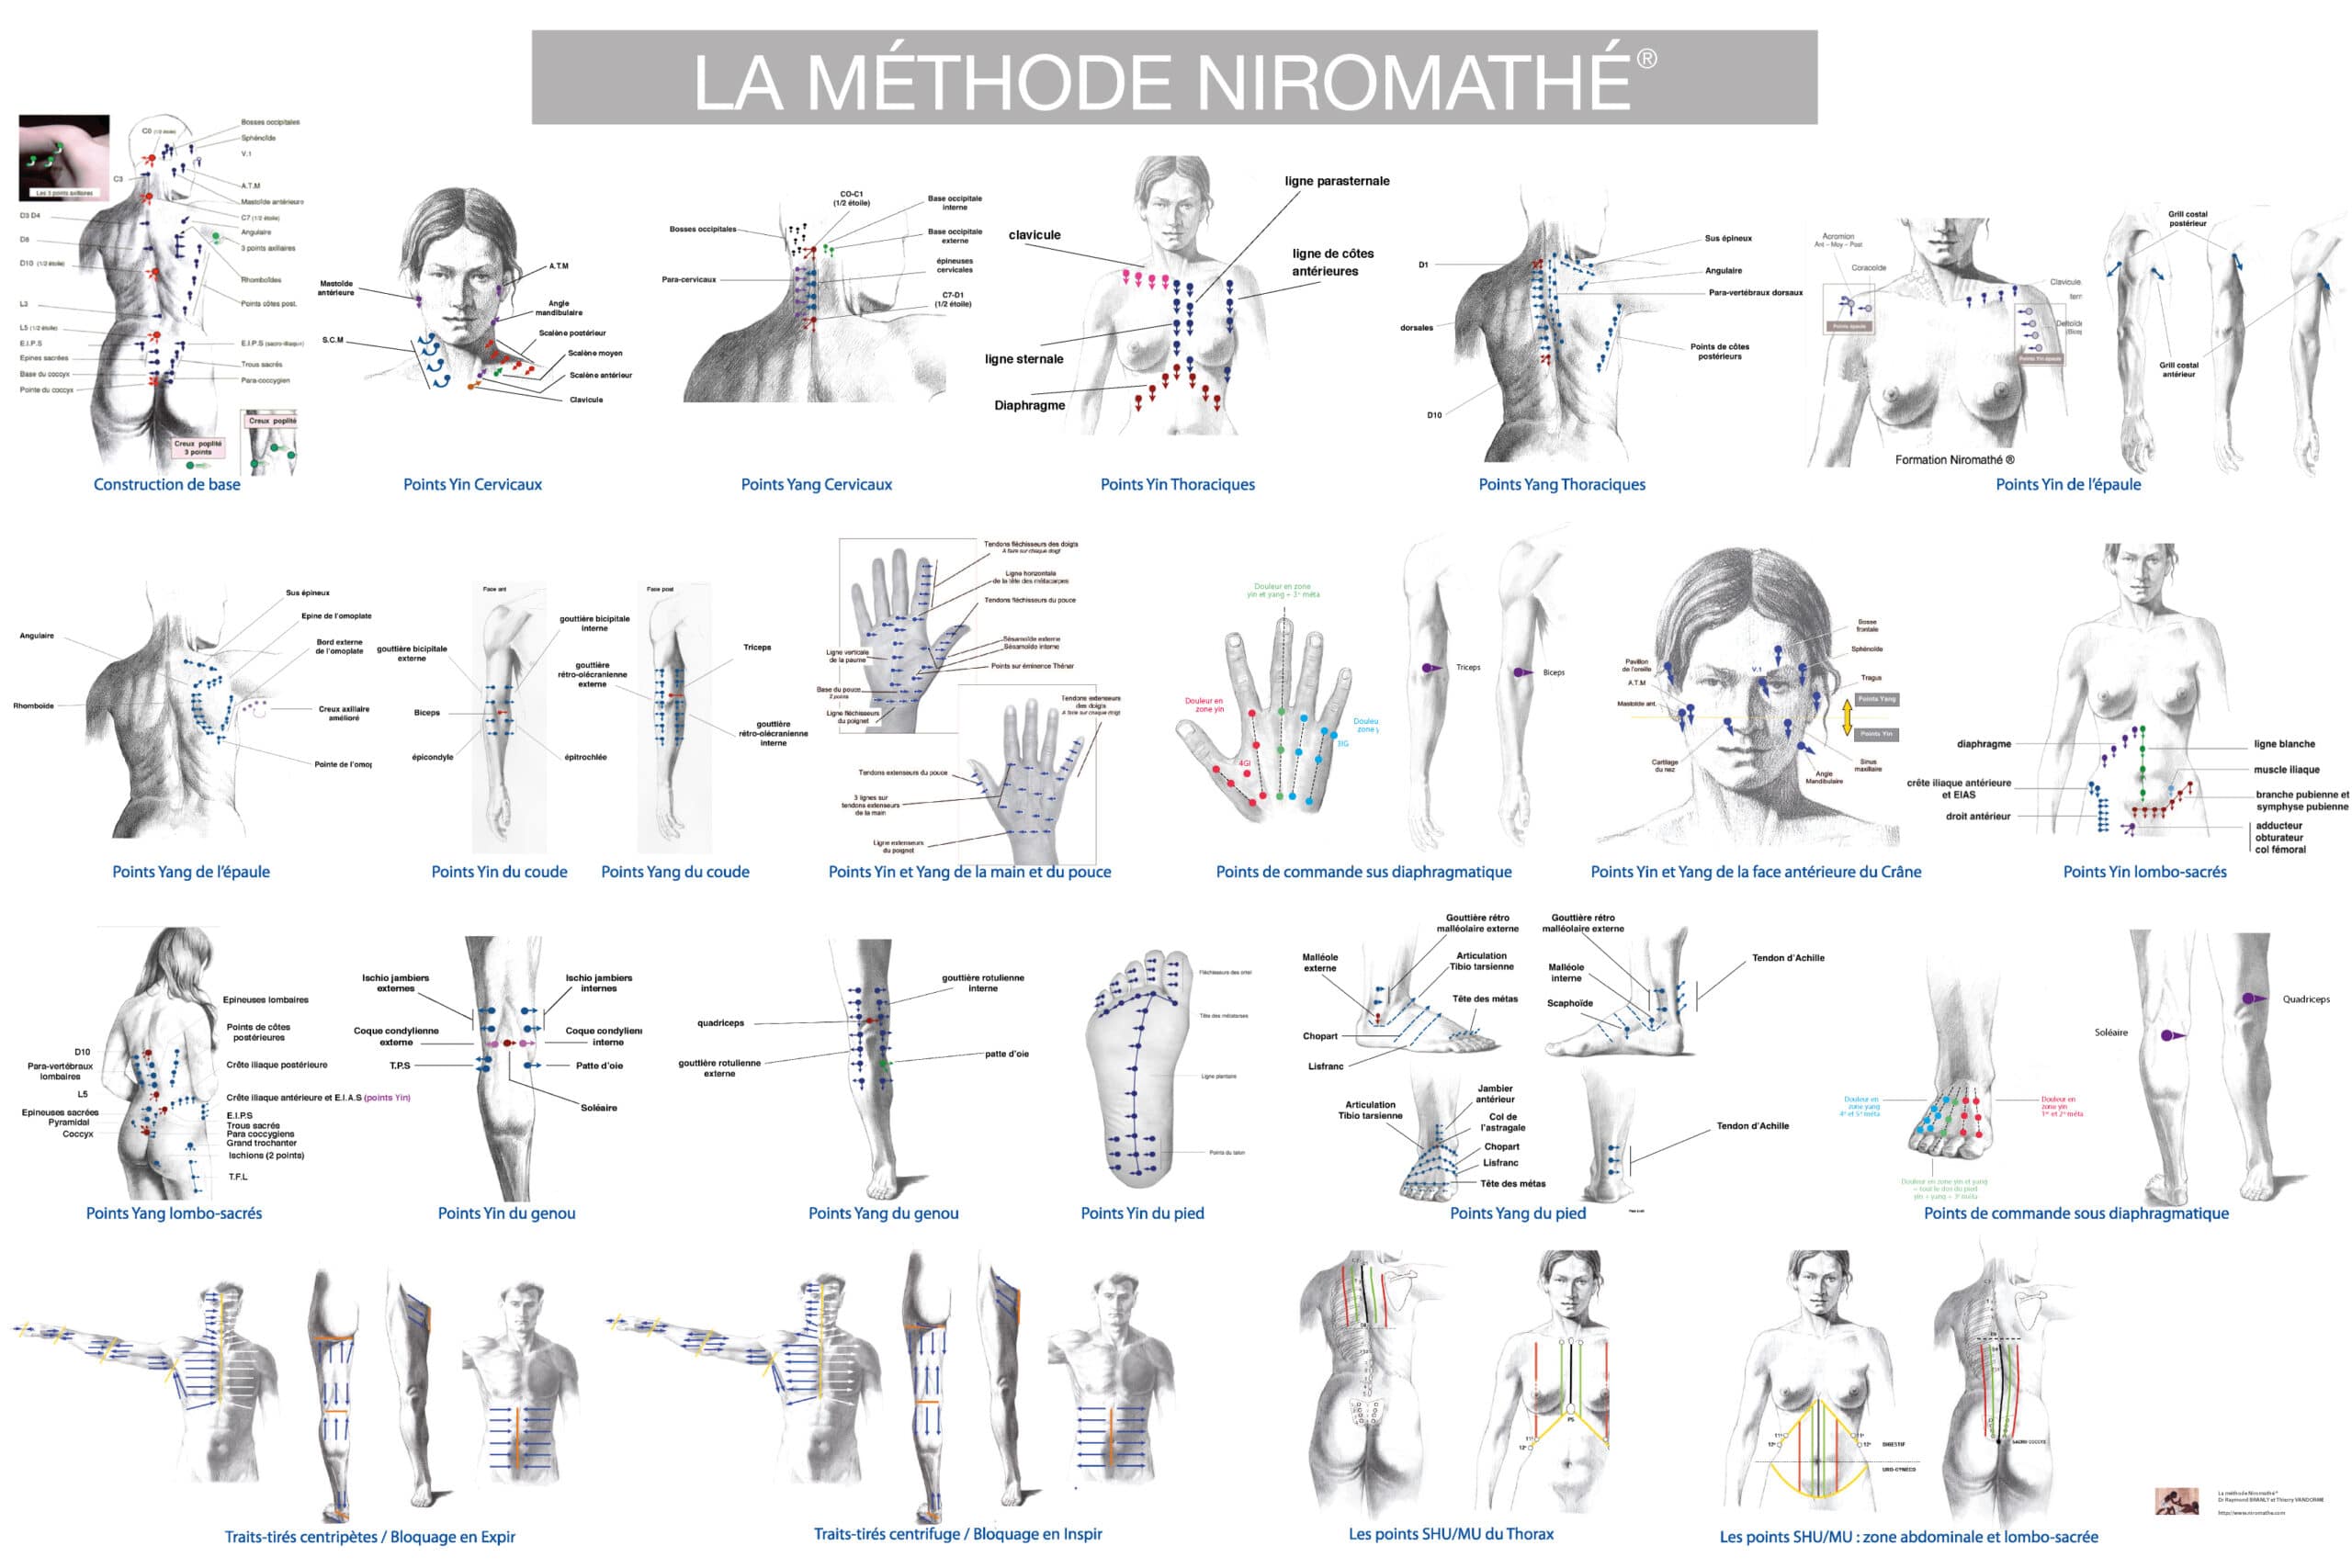 poster des points de niromathe, une technique de reflexotherapie vertébrale et périphérique